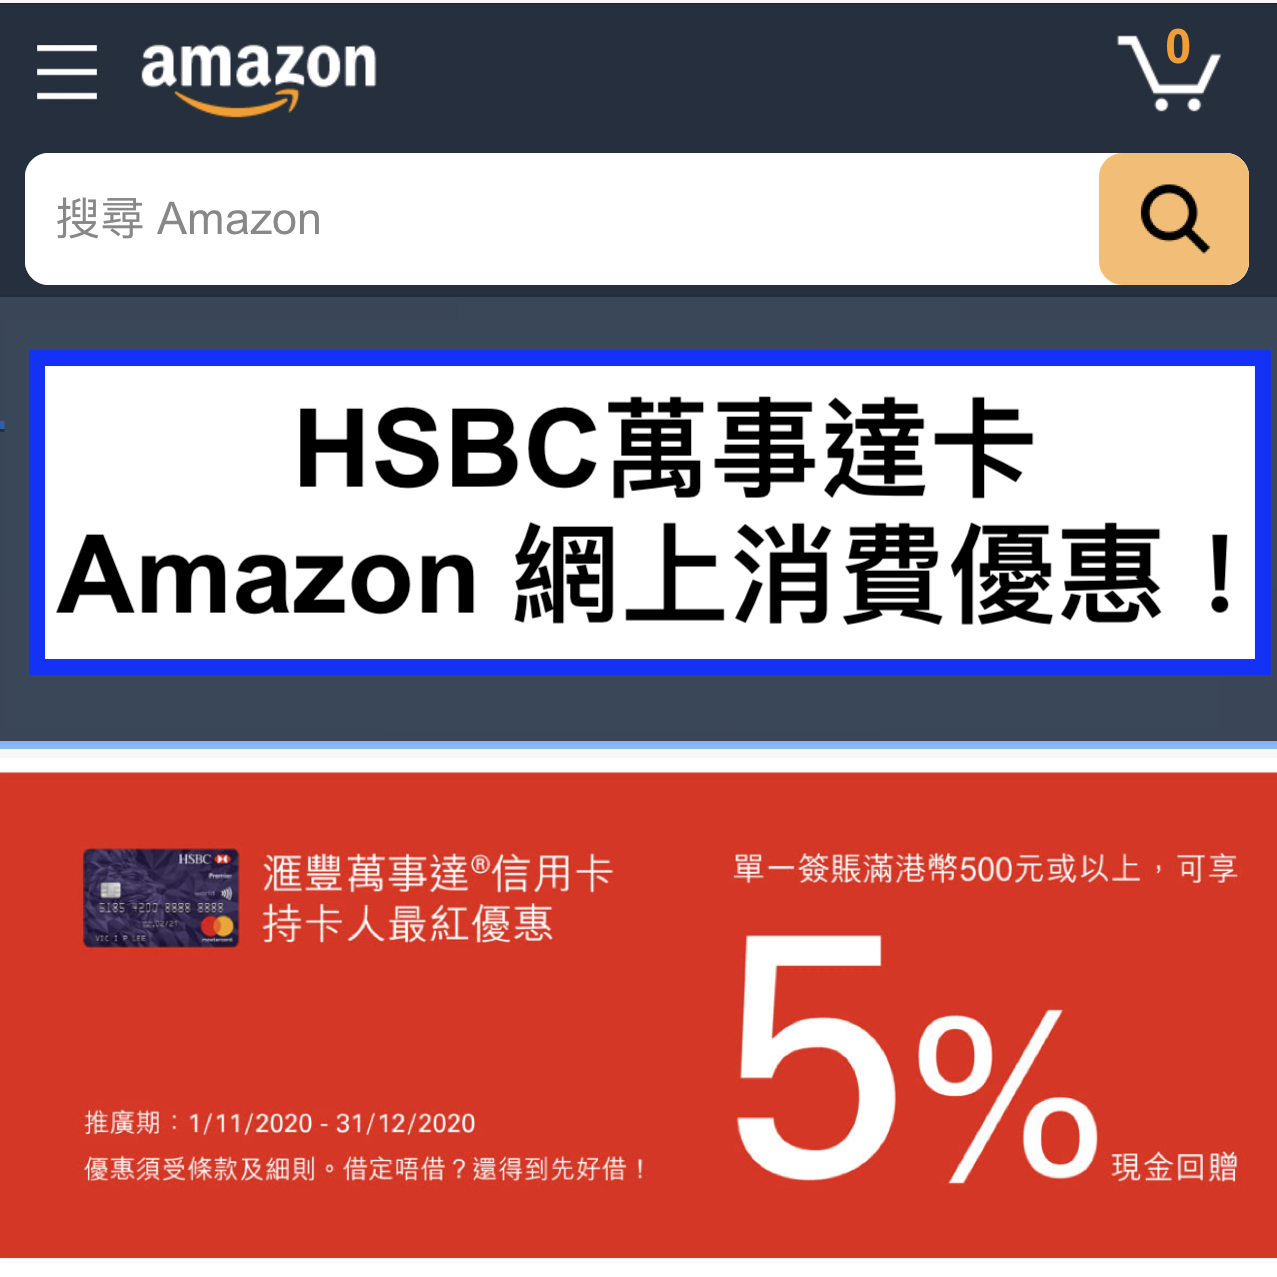 HSBC萬事達卡Amazon 網上消費優惠